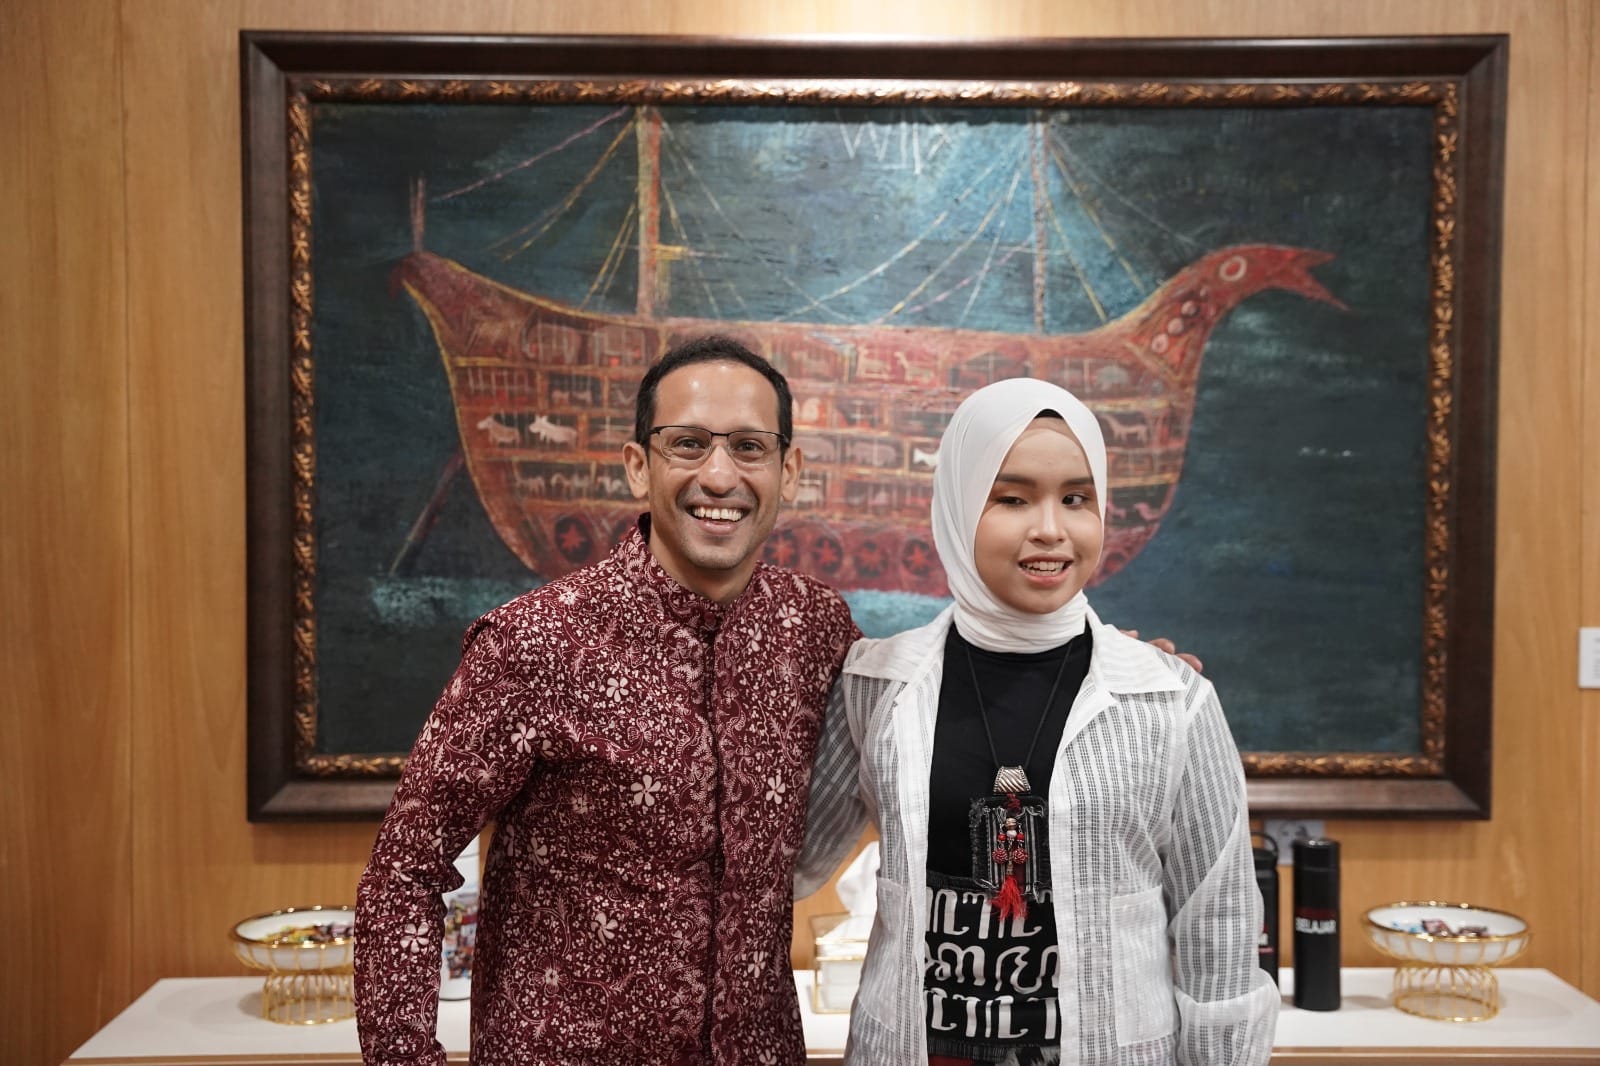 Kelebihan Putri Ariani, Mampu Deteksi Suara Mendikbudristek di C Mayor